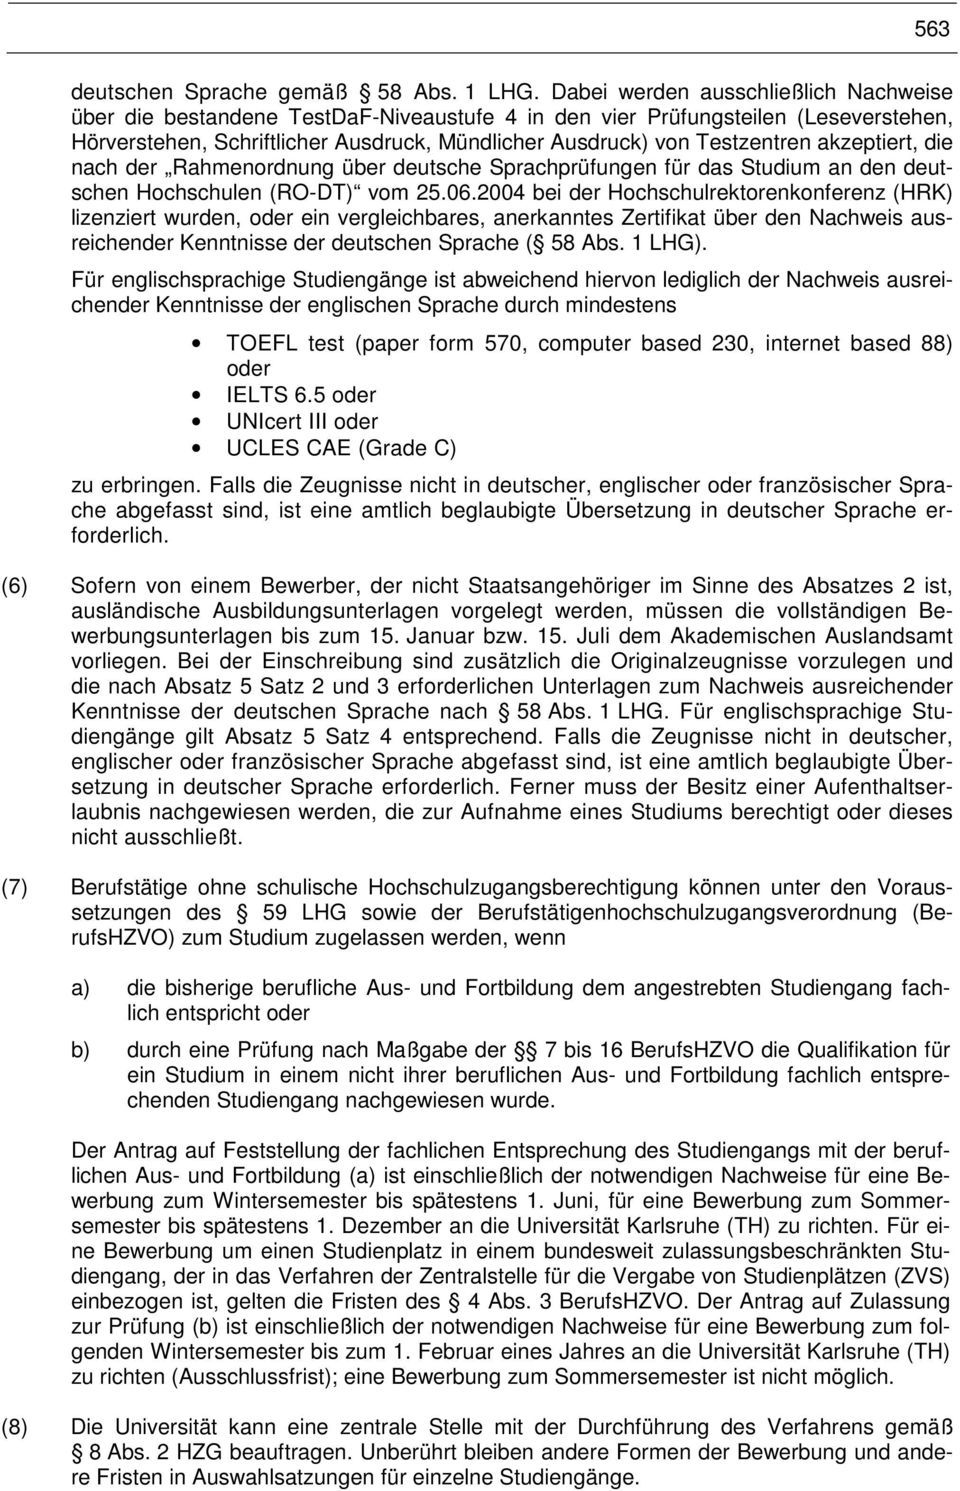 akzeptiert, die nach der Rahmenordnung über deutsche Sprachprüfungen für das Studium an den deutschen Hochschulen (RO-DT) vom 25.06.